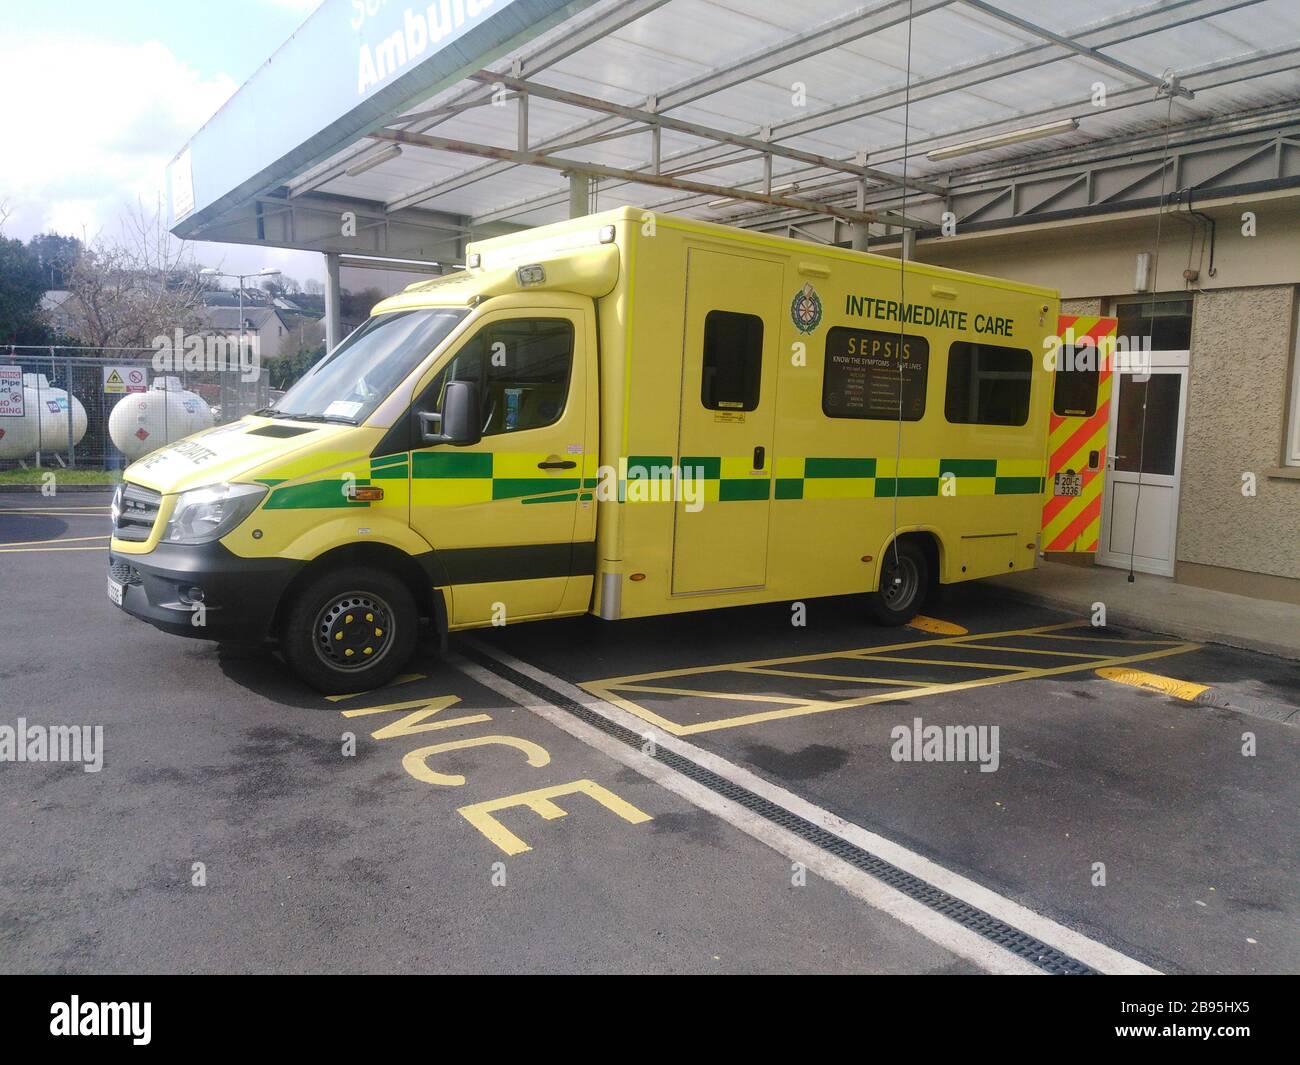 Service national d'ambulance véhicule de soins intermédiaires, base d'ambulance Bantry, Bantry, West Cork, Irlande Banque D'Images